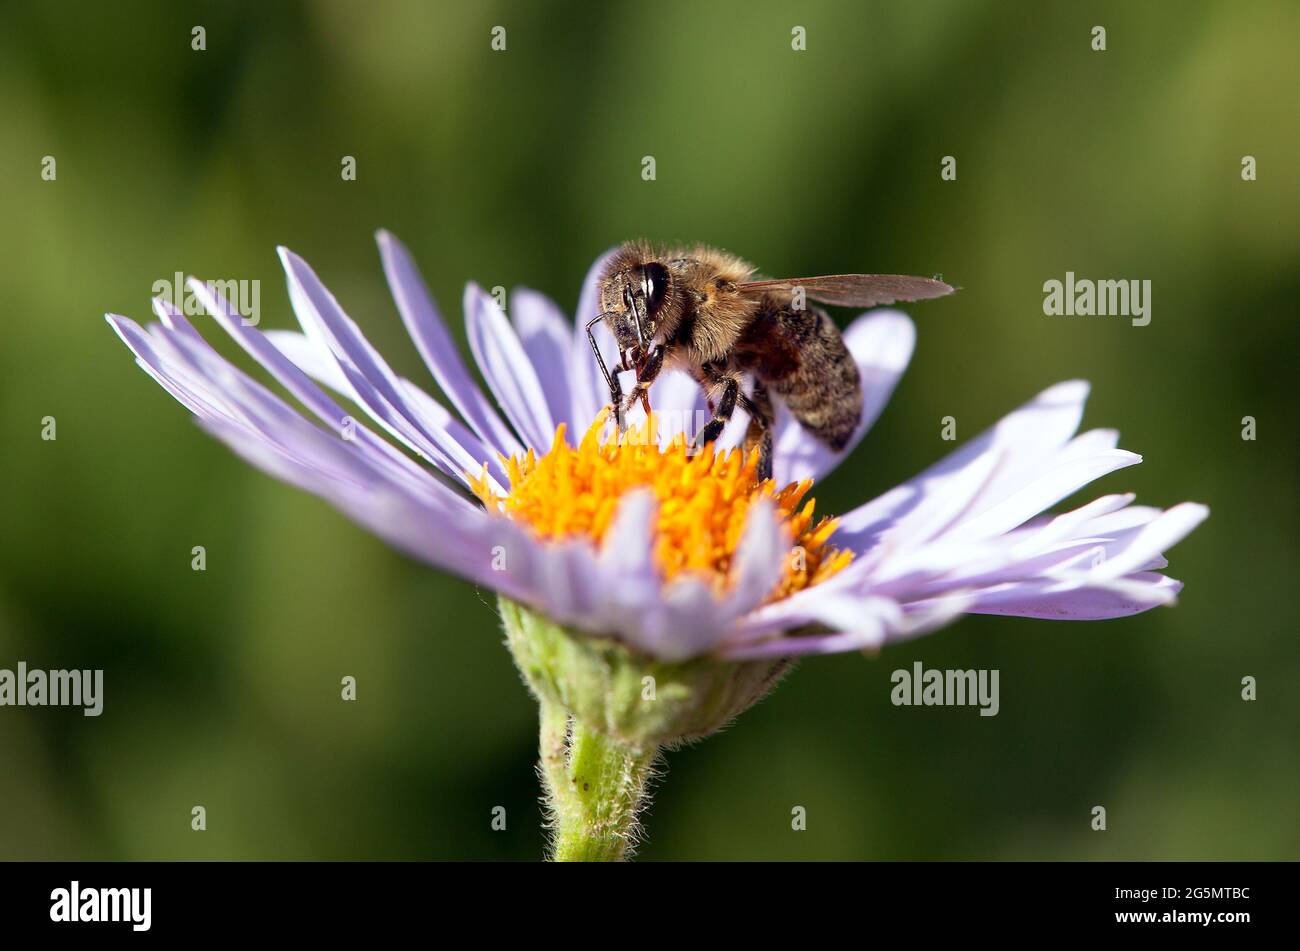 Detail der Biene oder Honigbiene in Latein APIs Mellifera, europäische oder westliche Honigbiene auf der violetten oder blauen Blume sitzend Stockfoto